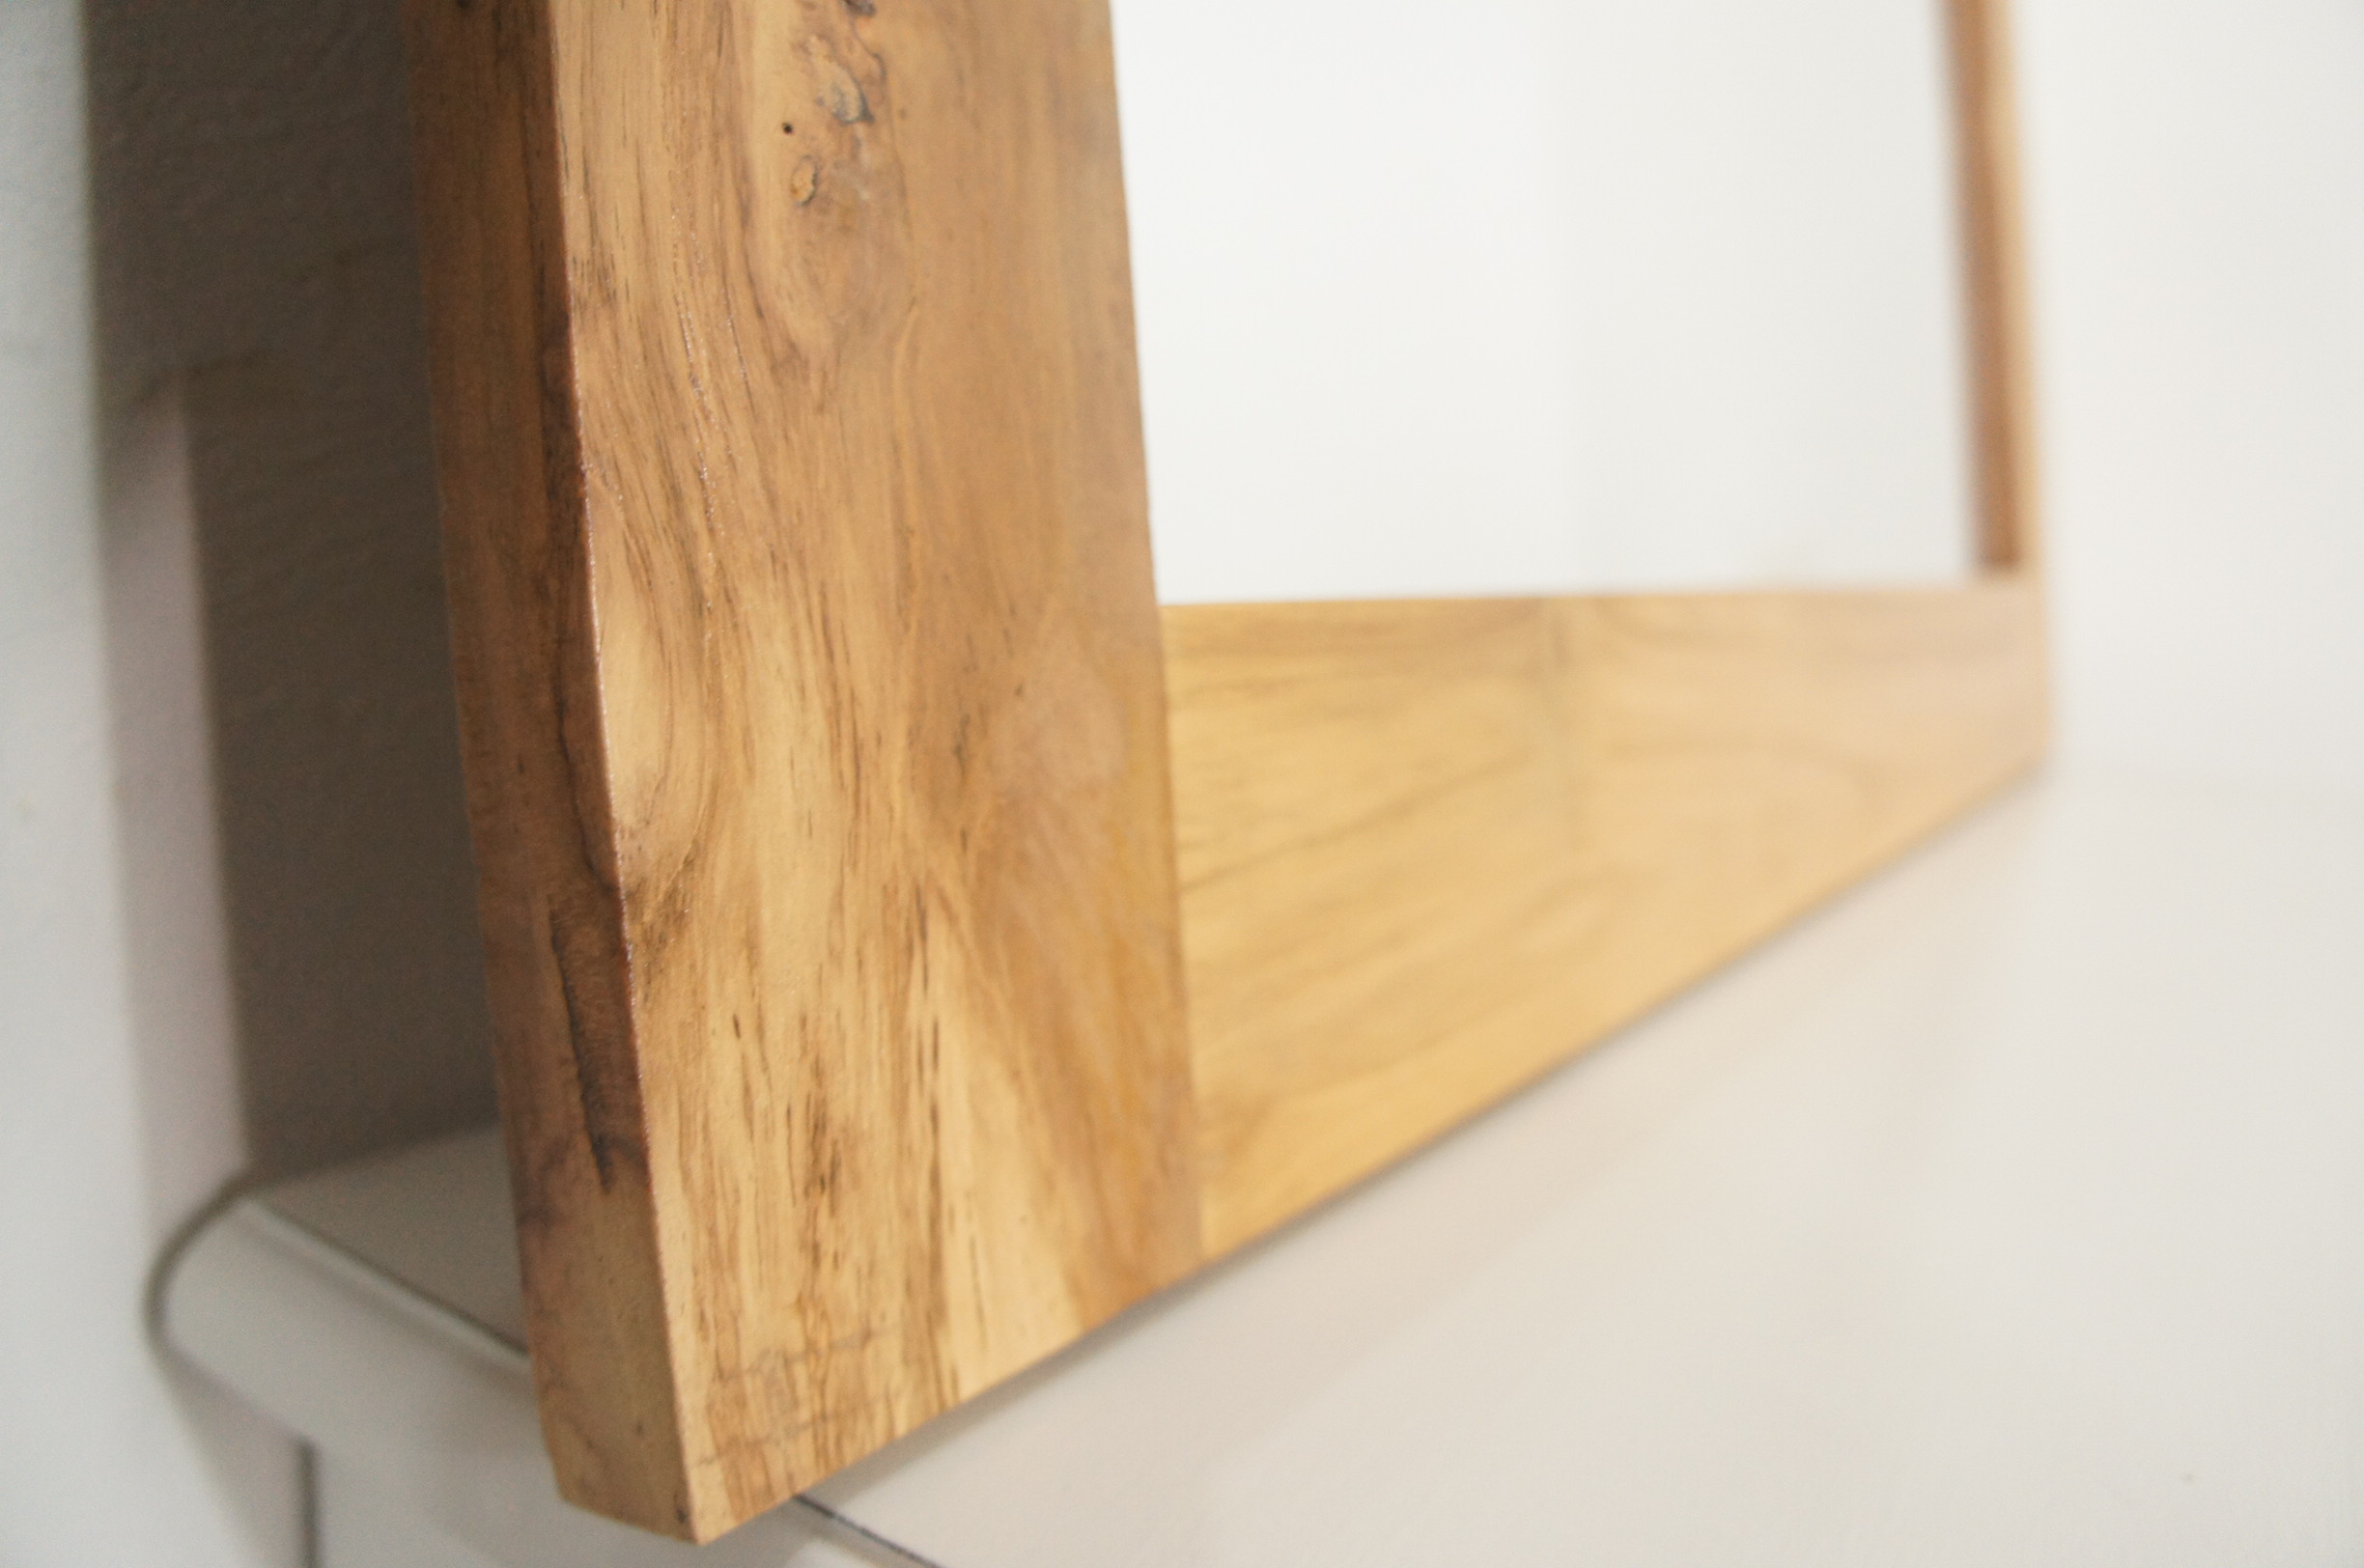 チーク無垢 木製フレーム 壁掛け 立てかけミラー 90×60